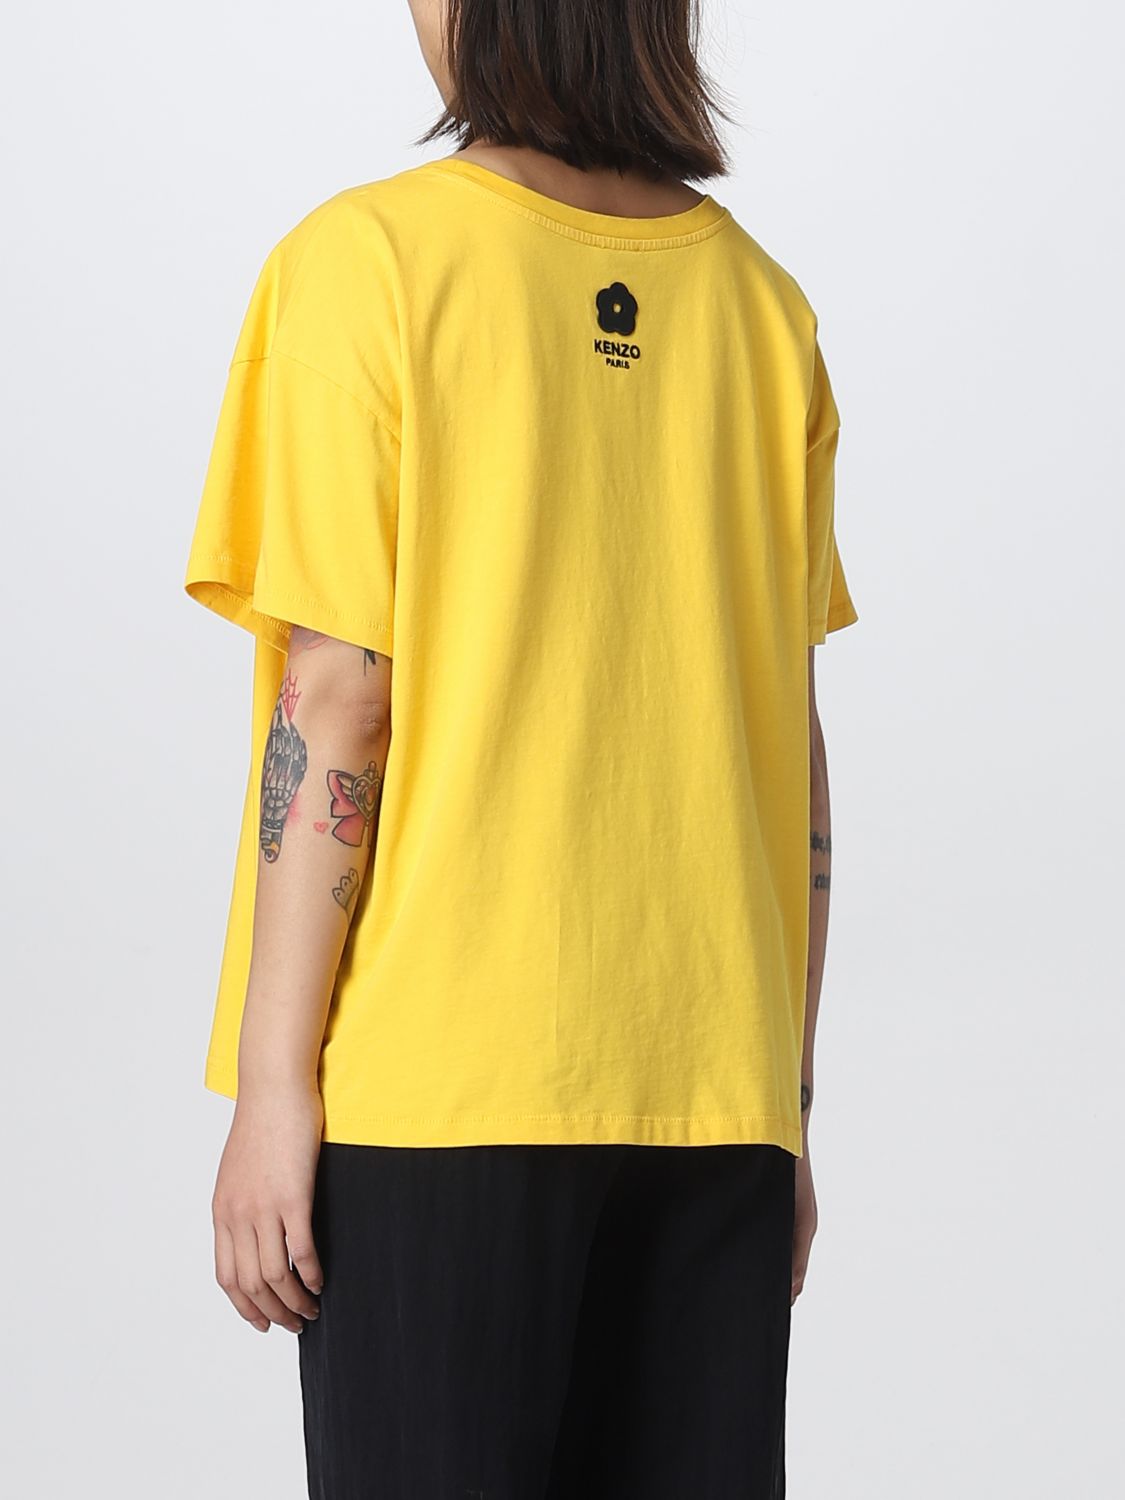 T-shirt Kenzo: T-shirt Elephant Kenzo in cotone giallo 3